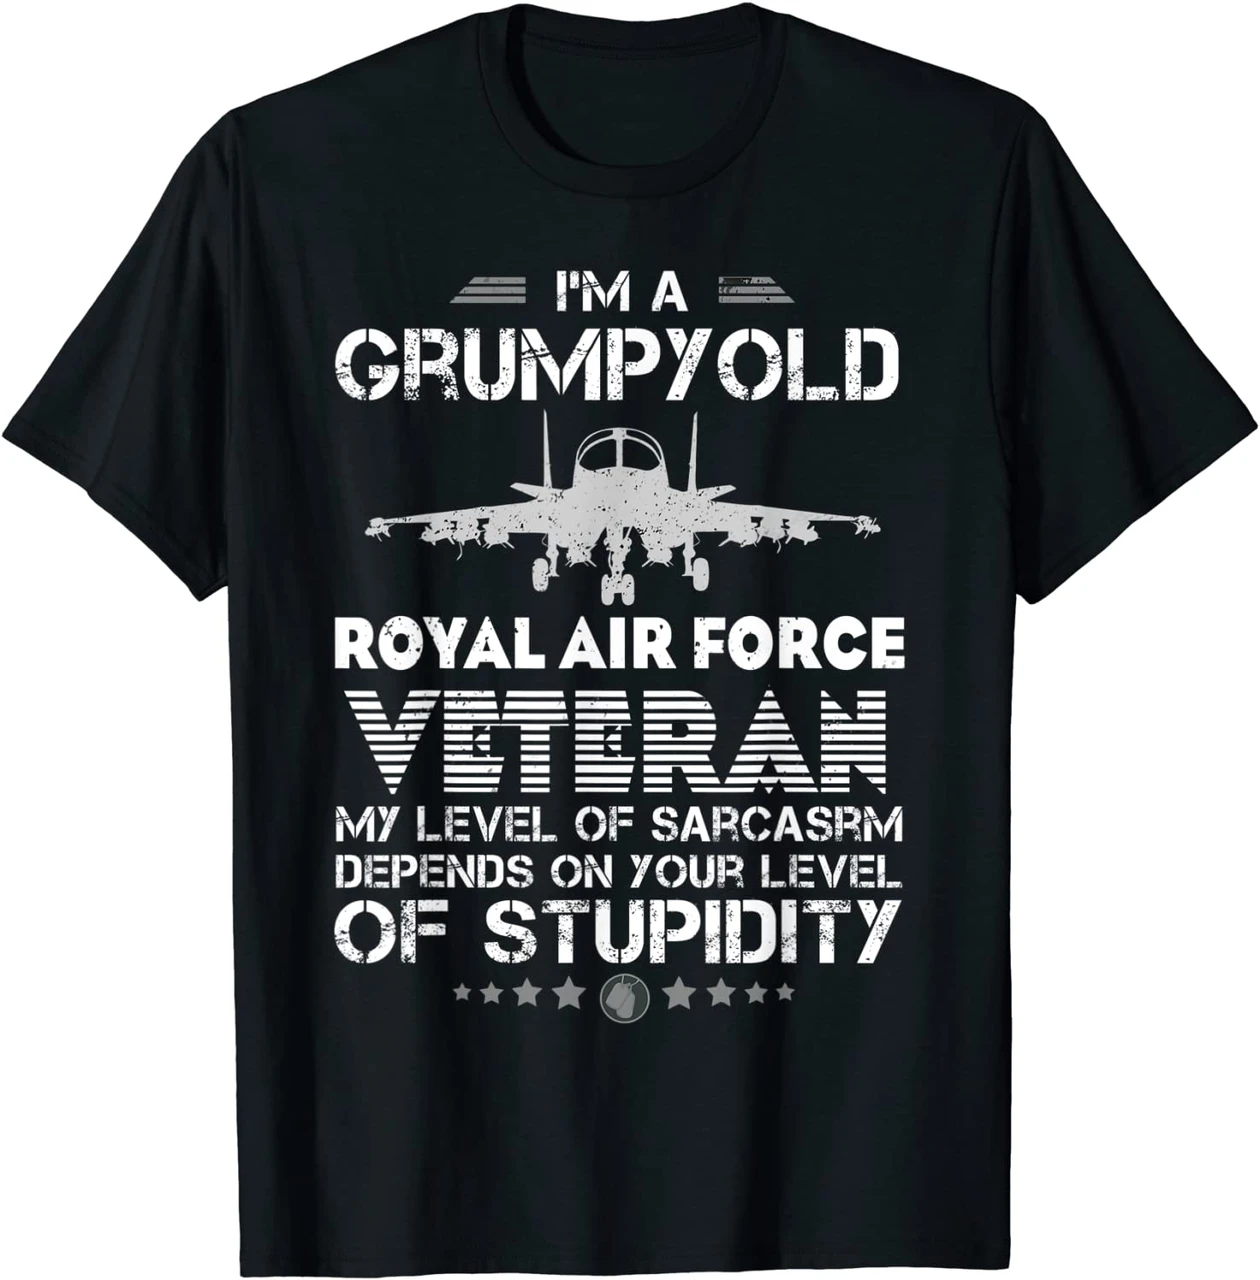 I'M A Grumpy Old Royal Air Force Veteran Shirt